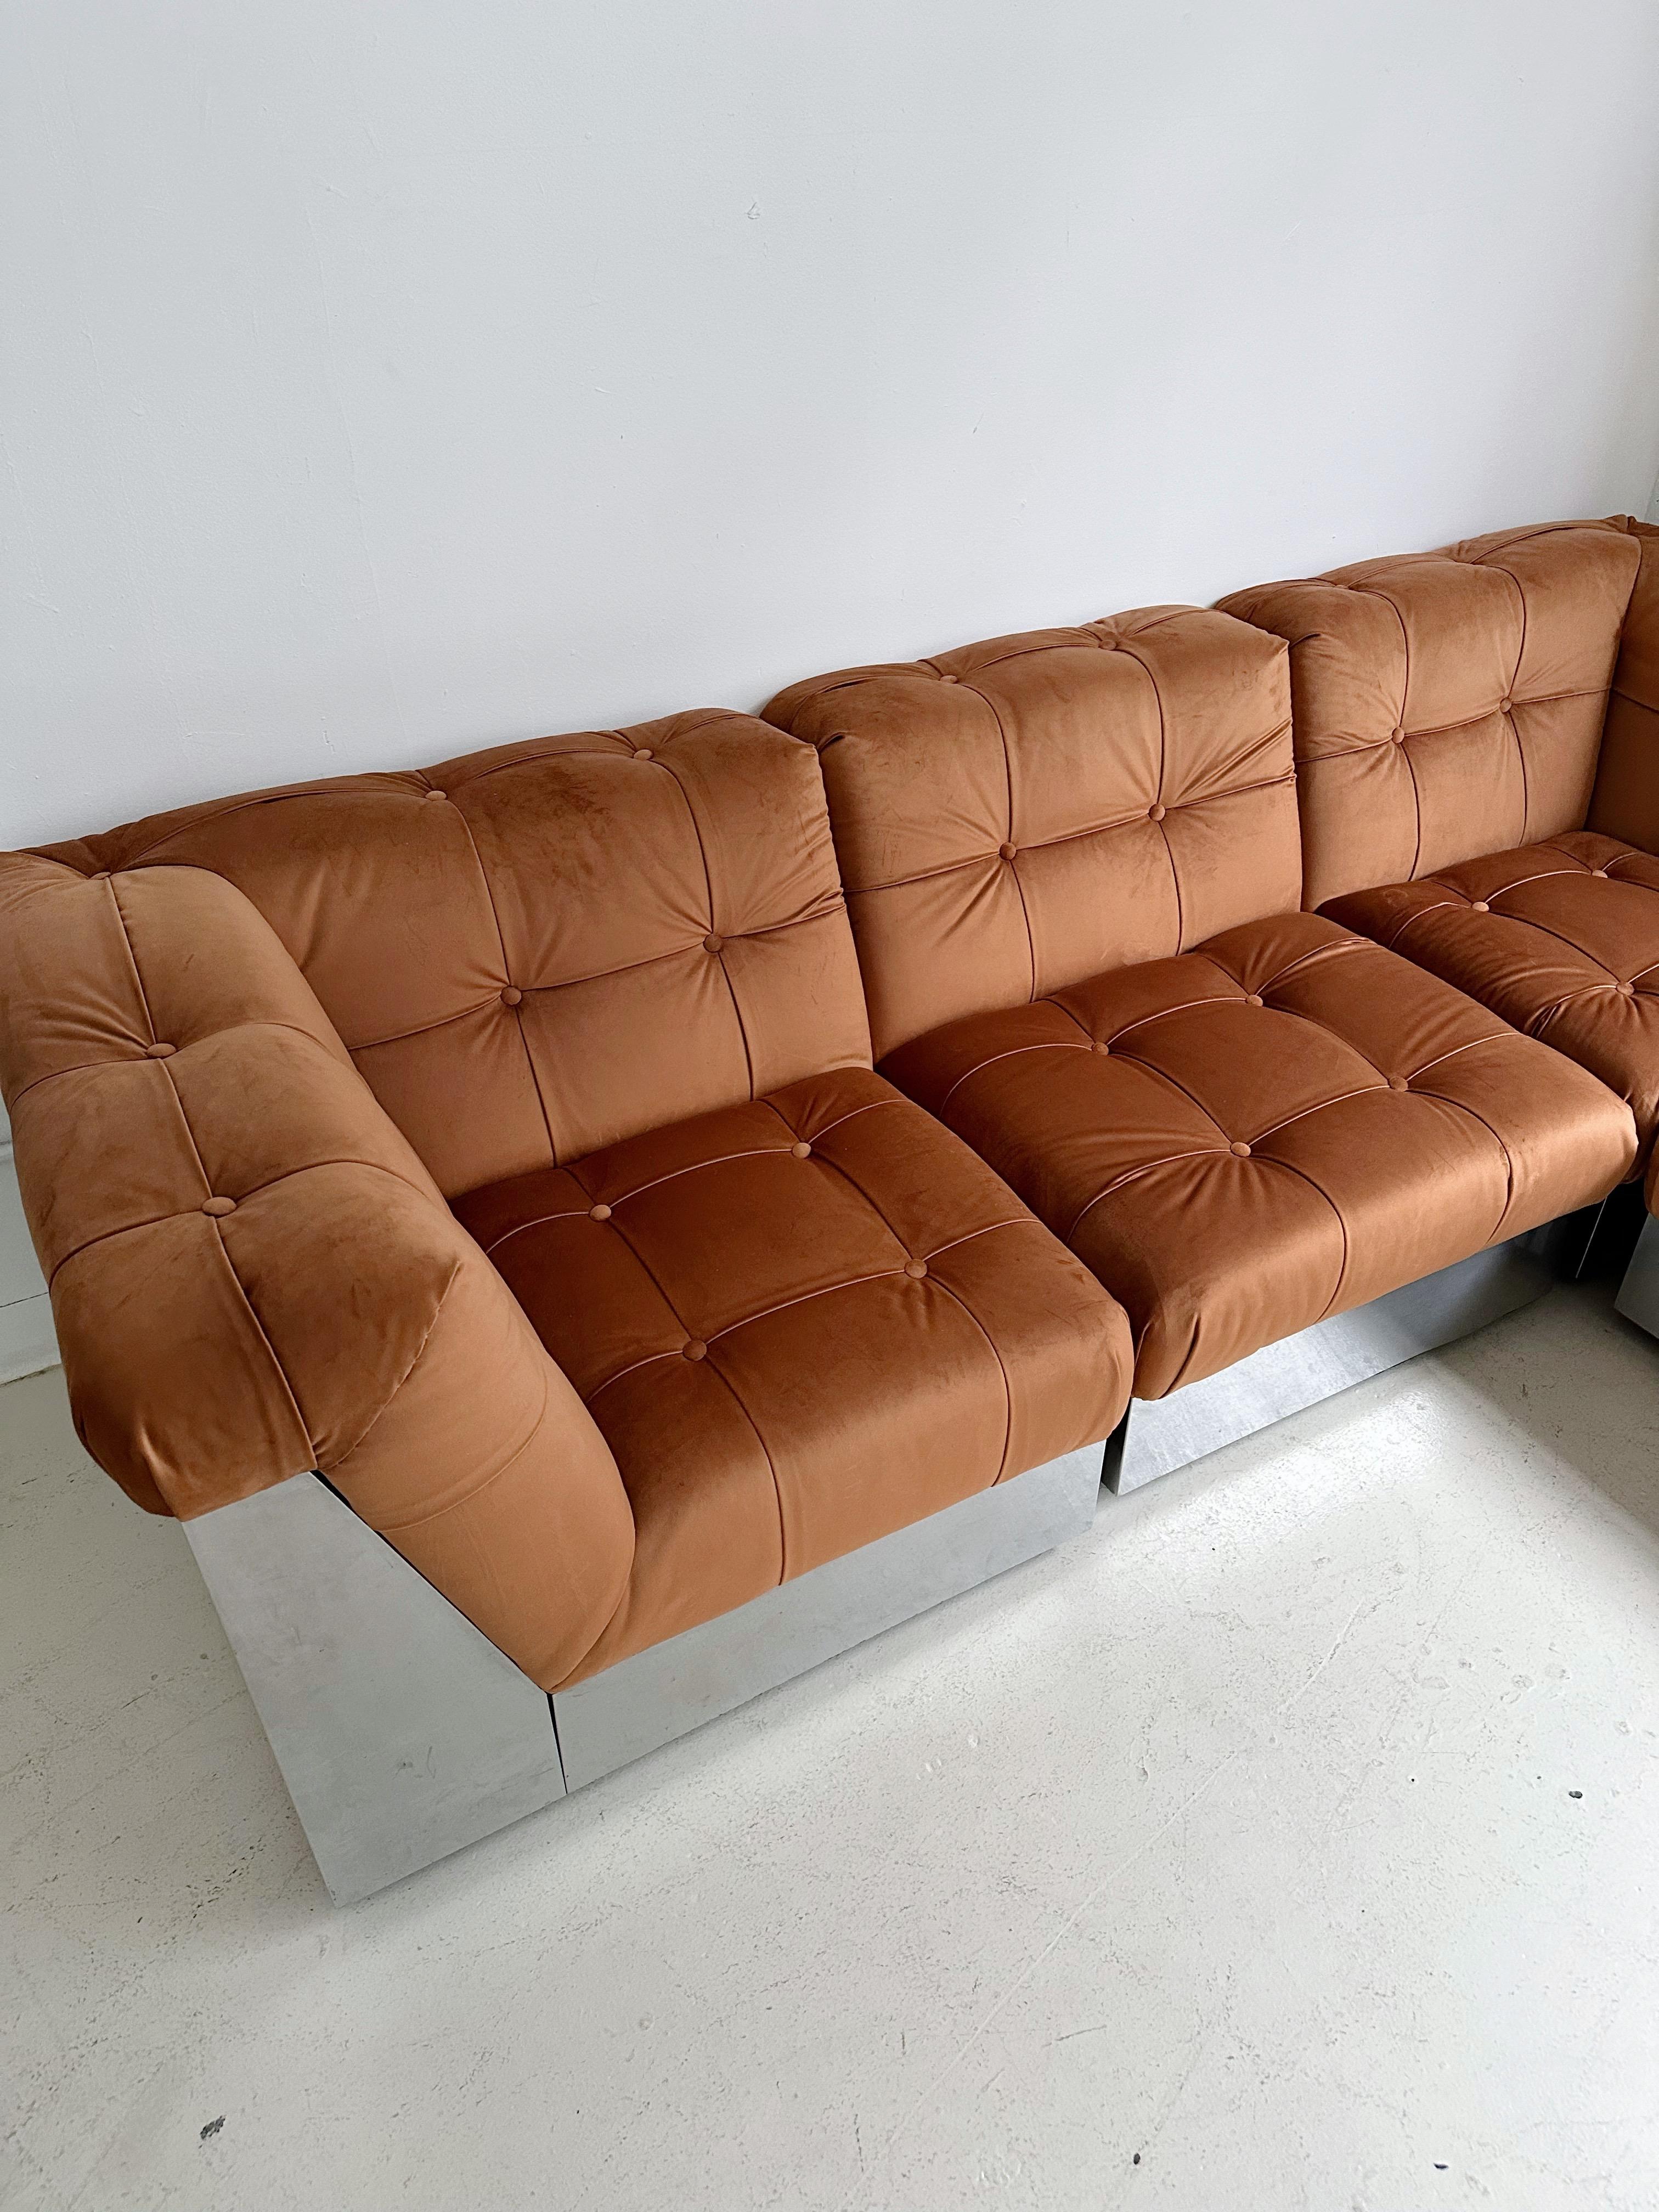 Samt & Stahlgestell 4 Pieces Modulares Sofa att. to Canasta by Giorgio Montani 3